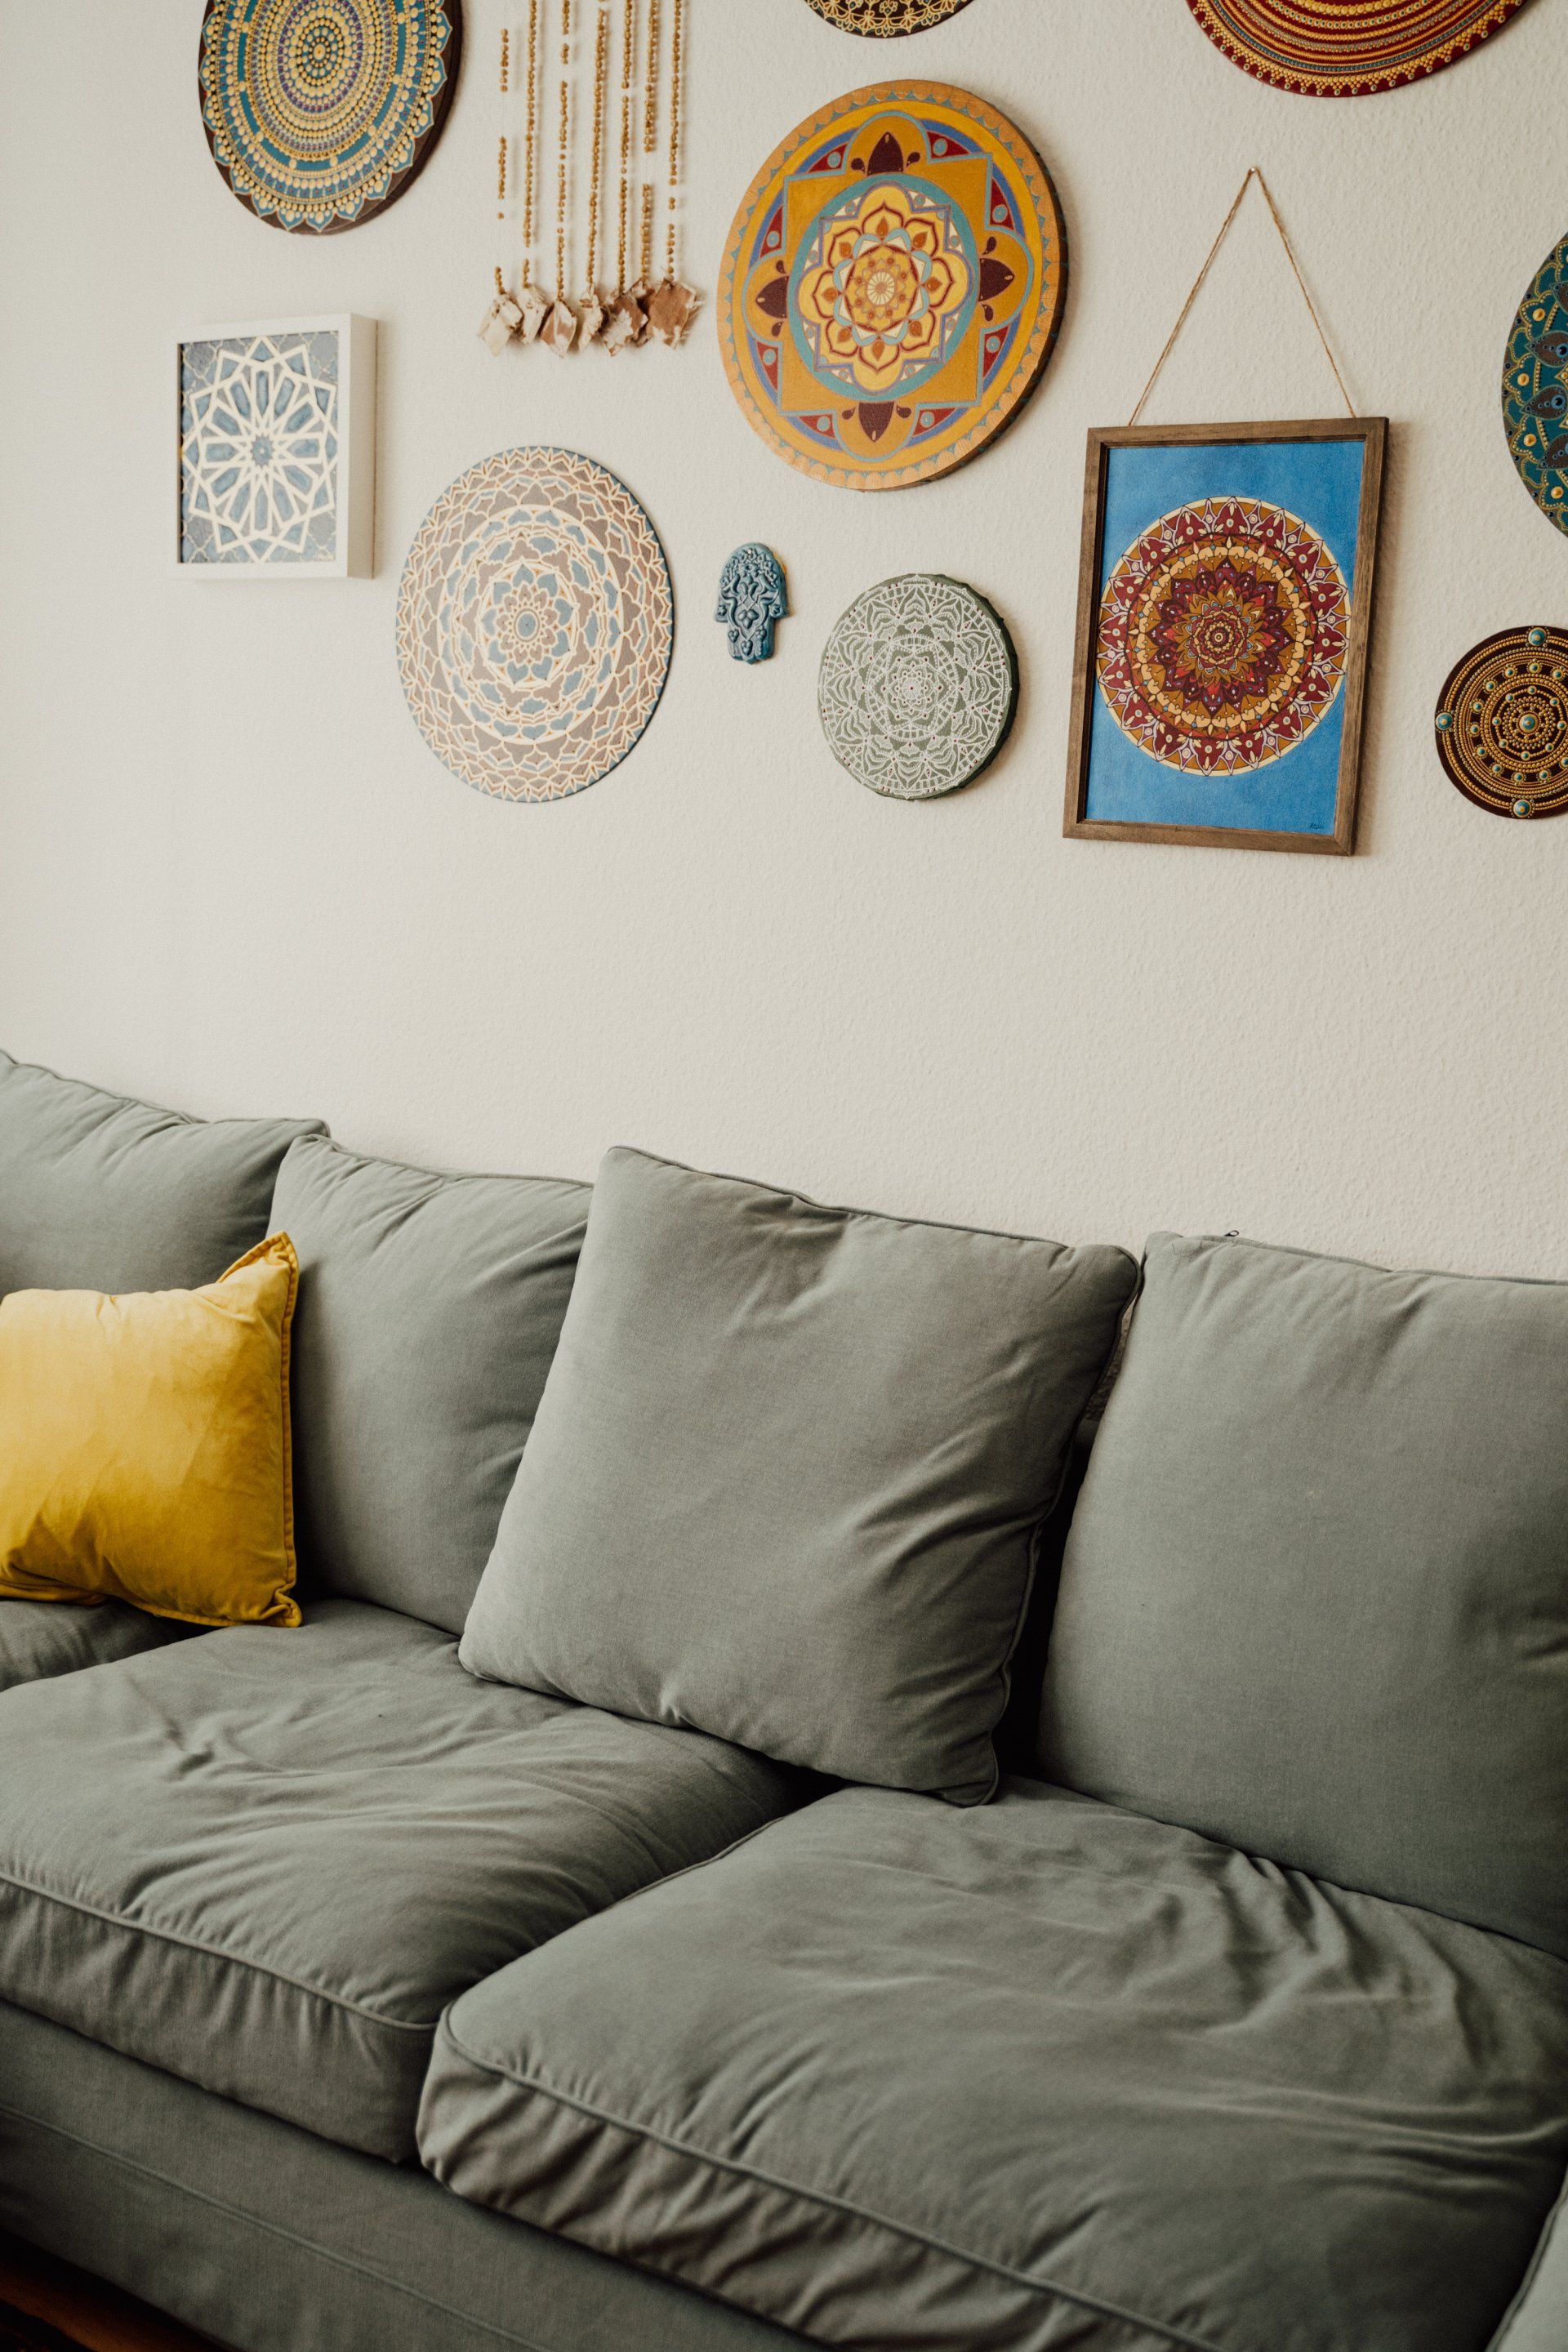 un divano appoggiato a un muro con quadri e piatti colorati